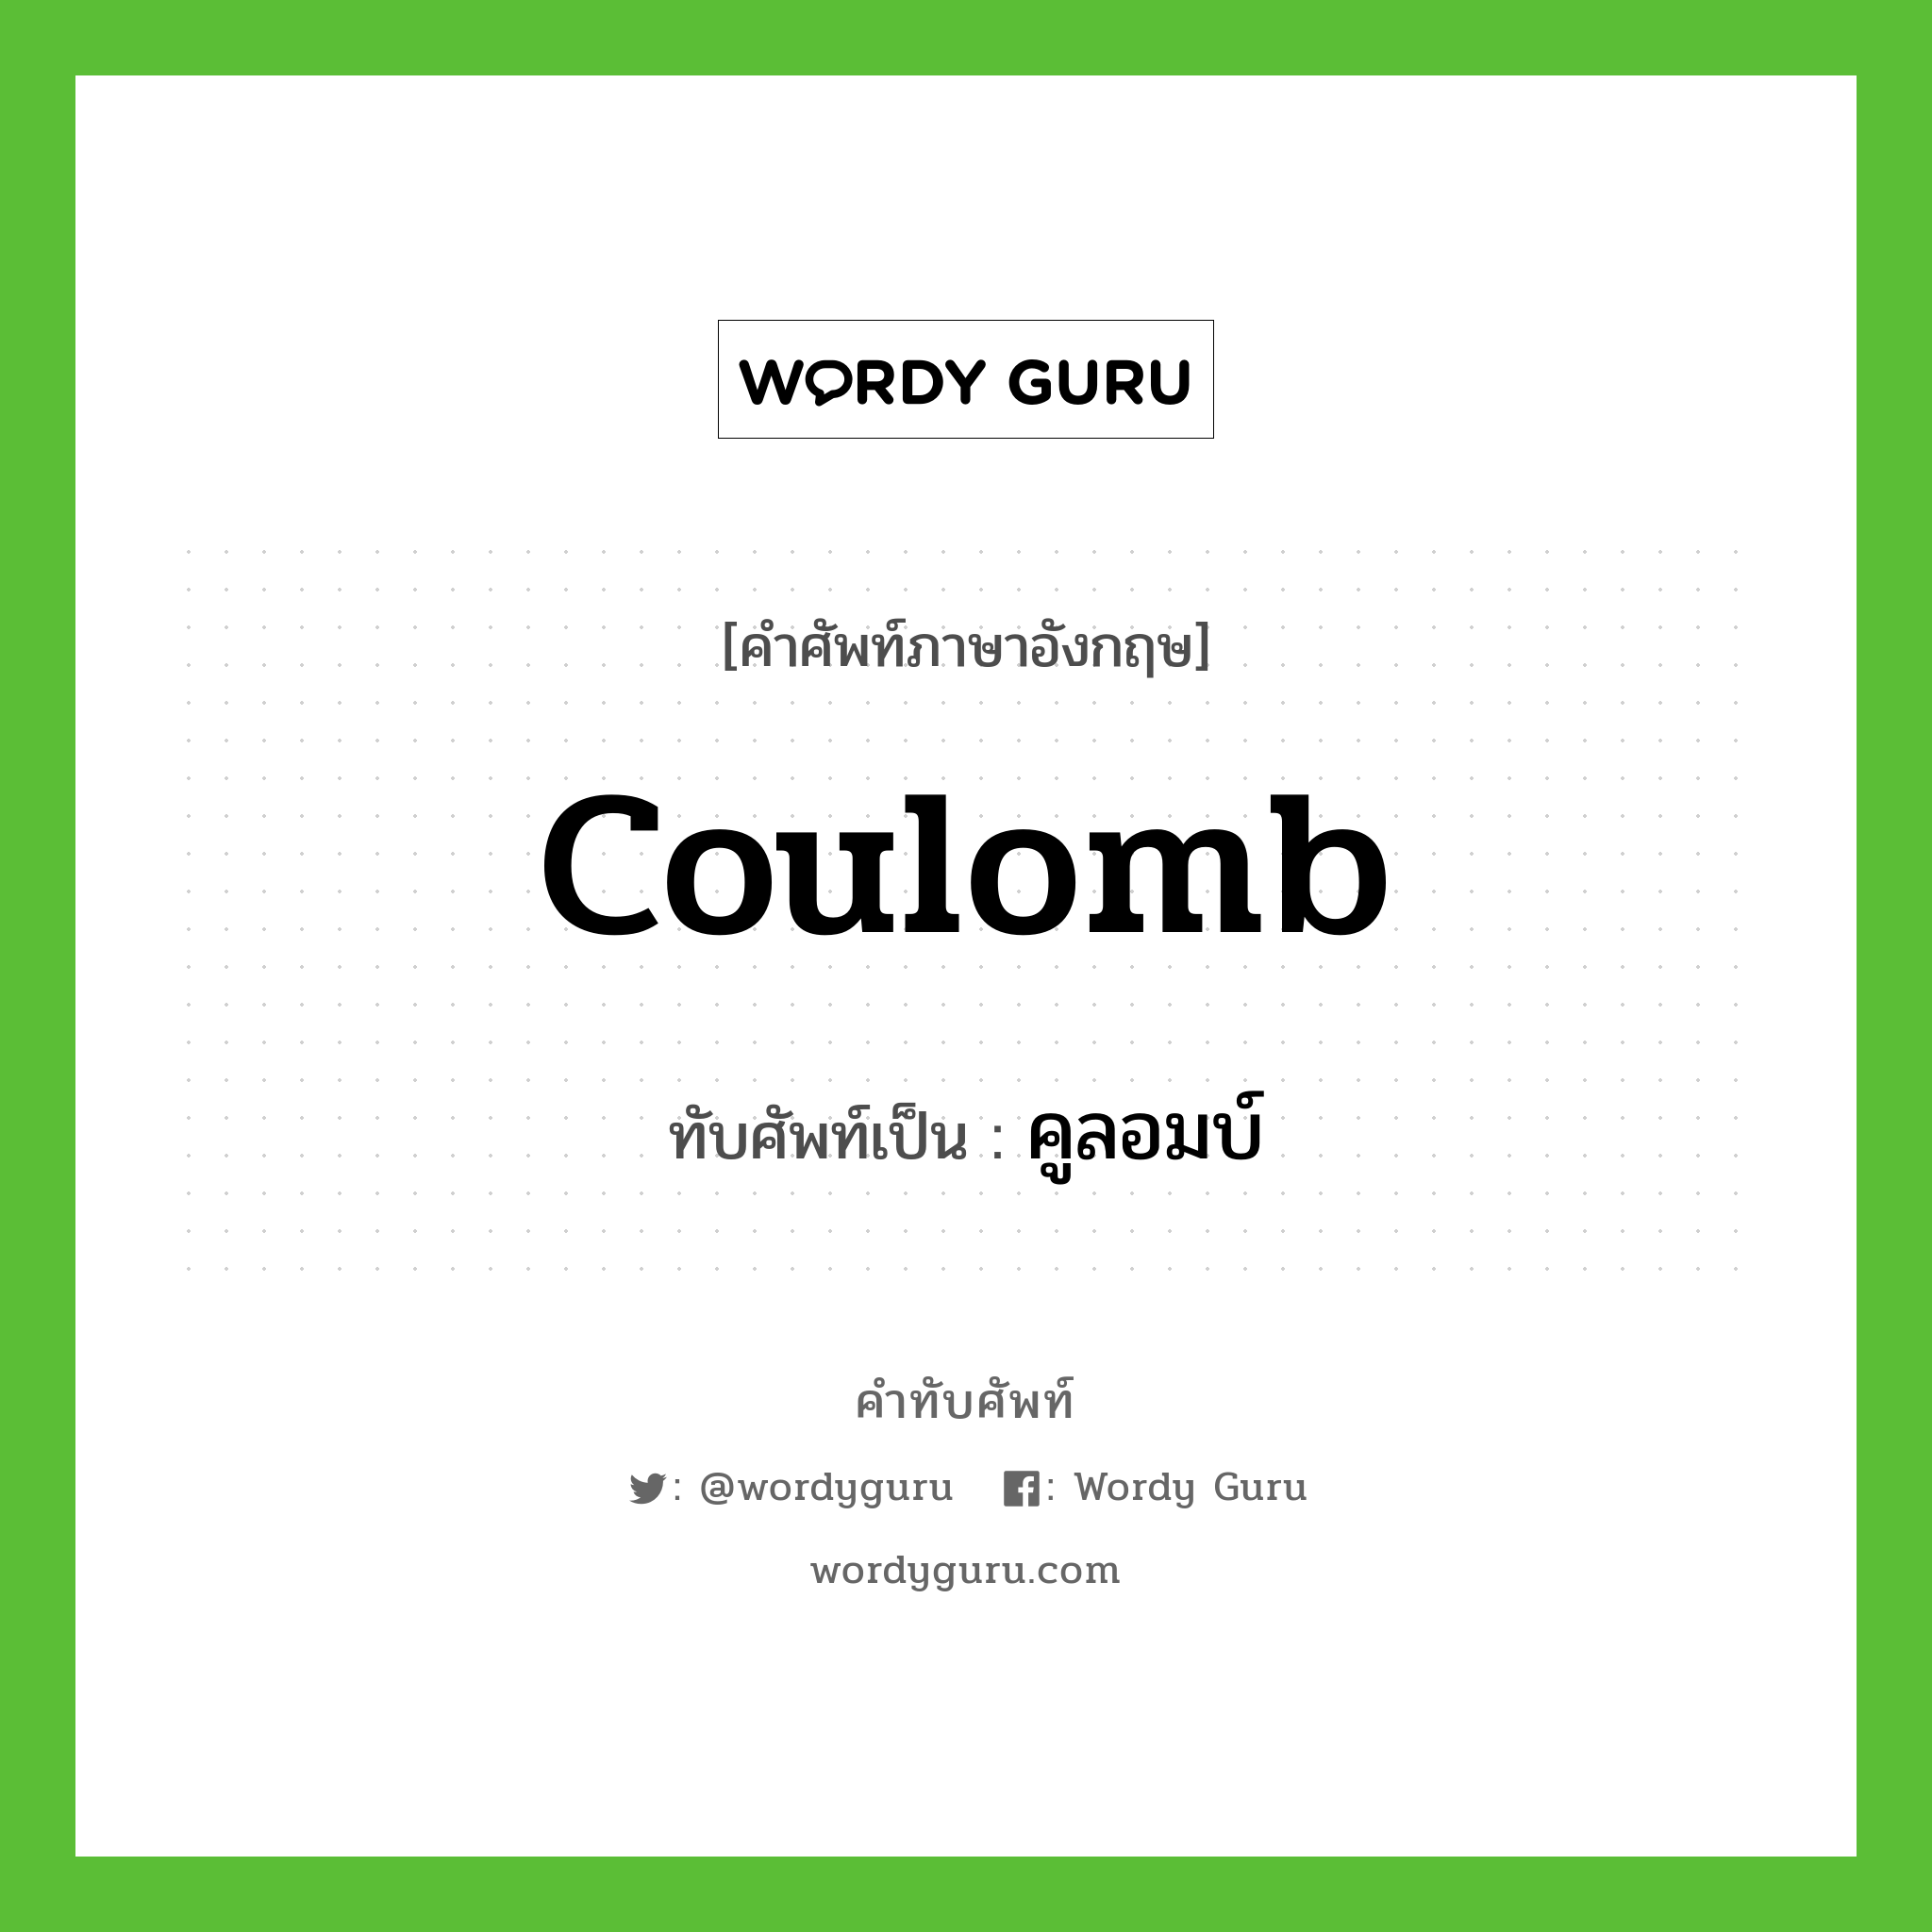 coulomb เขียนเป็นคำไทยว่าอะไร?, คำศัพท์ภาษาอังกฤษ coulomb ทับศัพท์เป็น คูลอมบ์